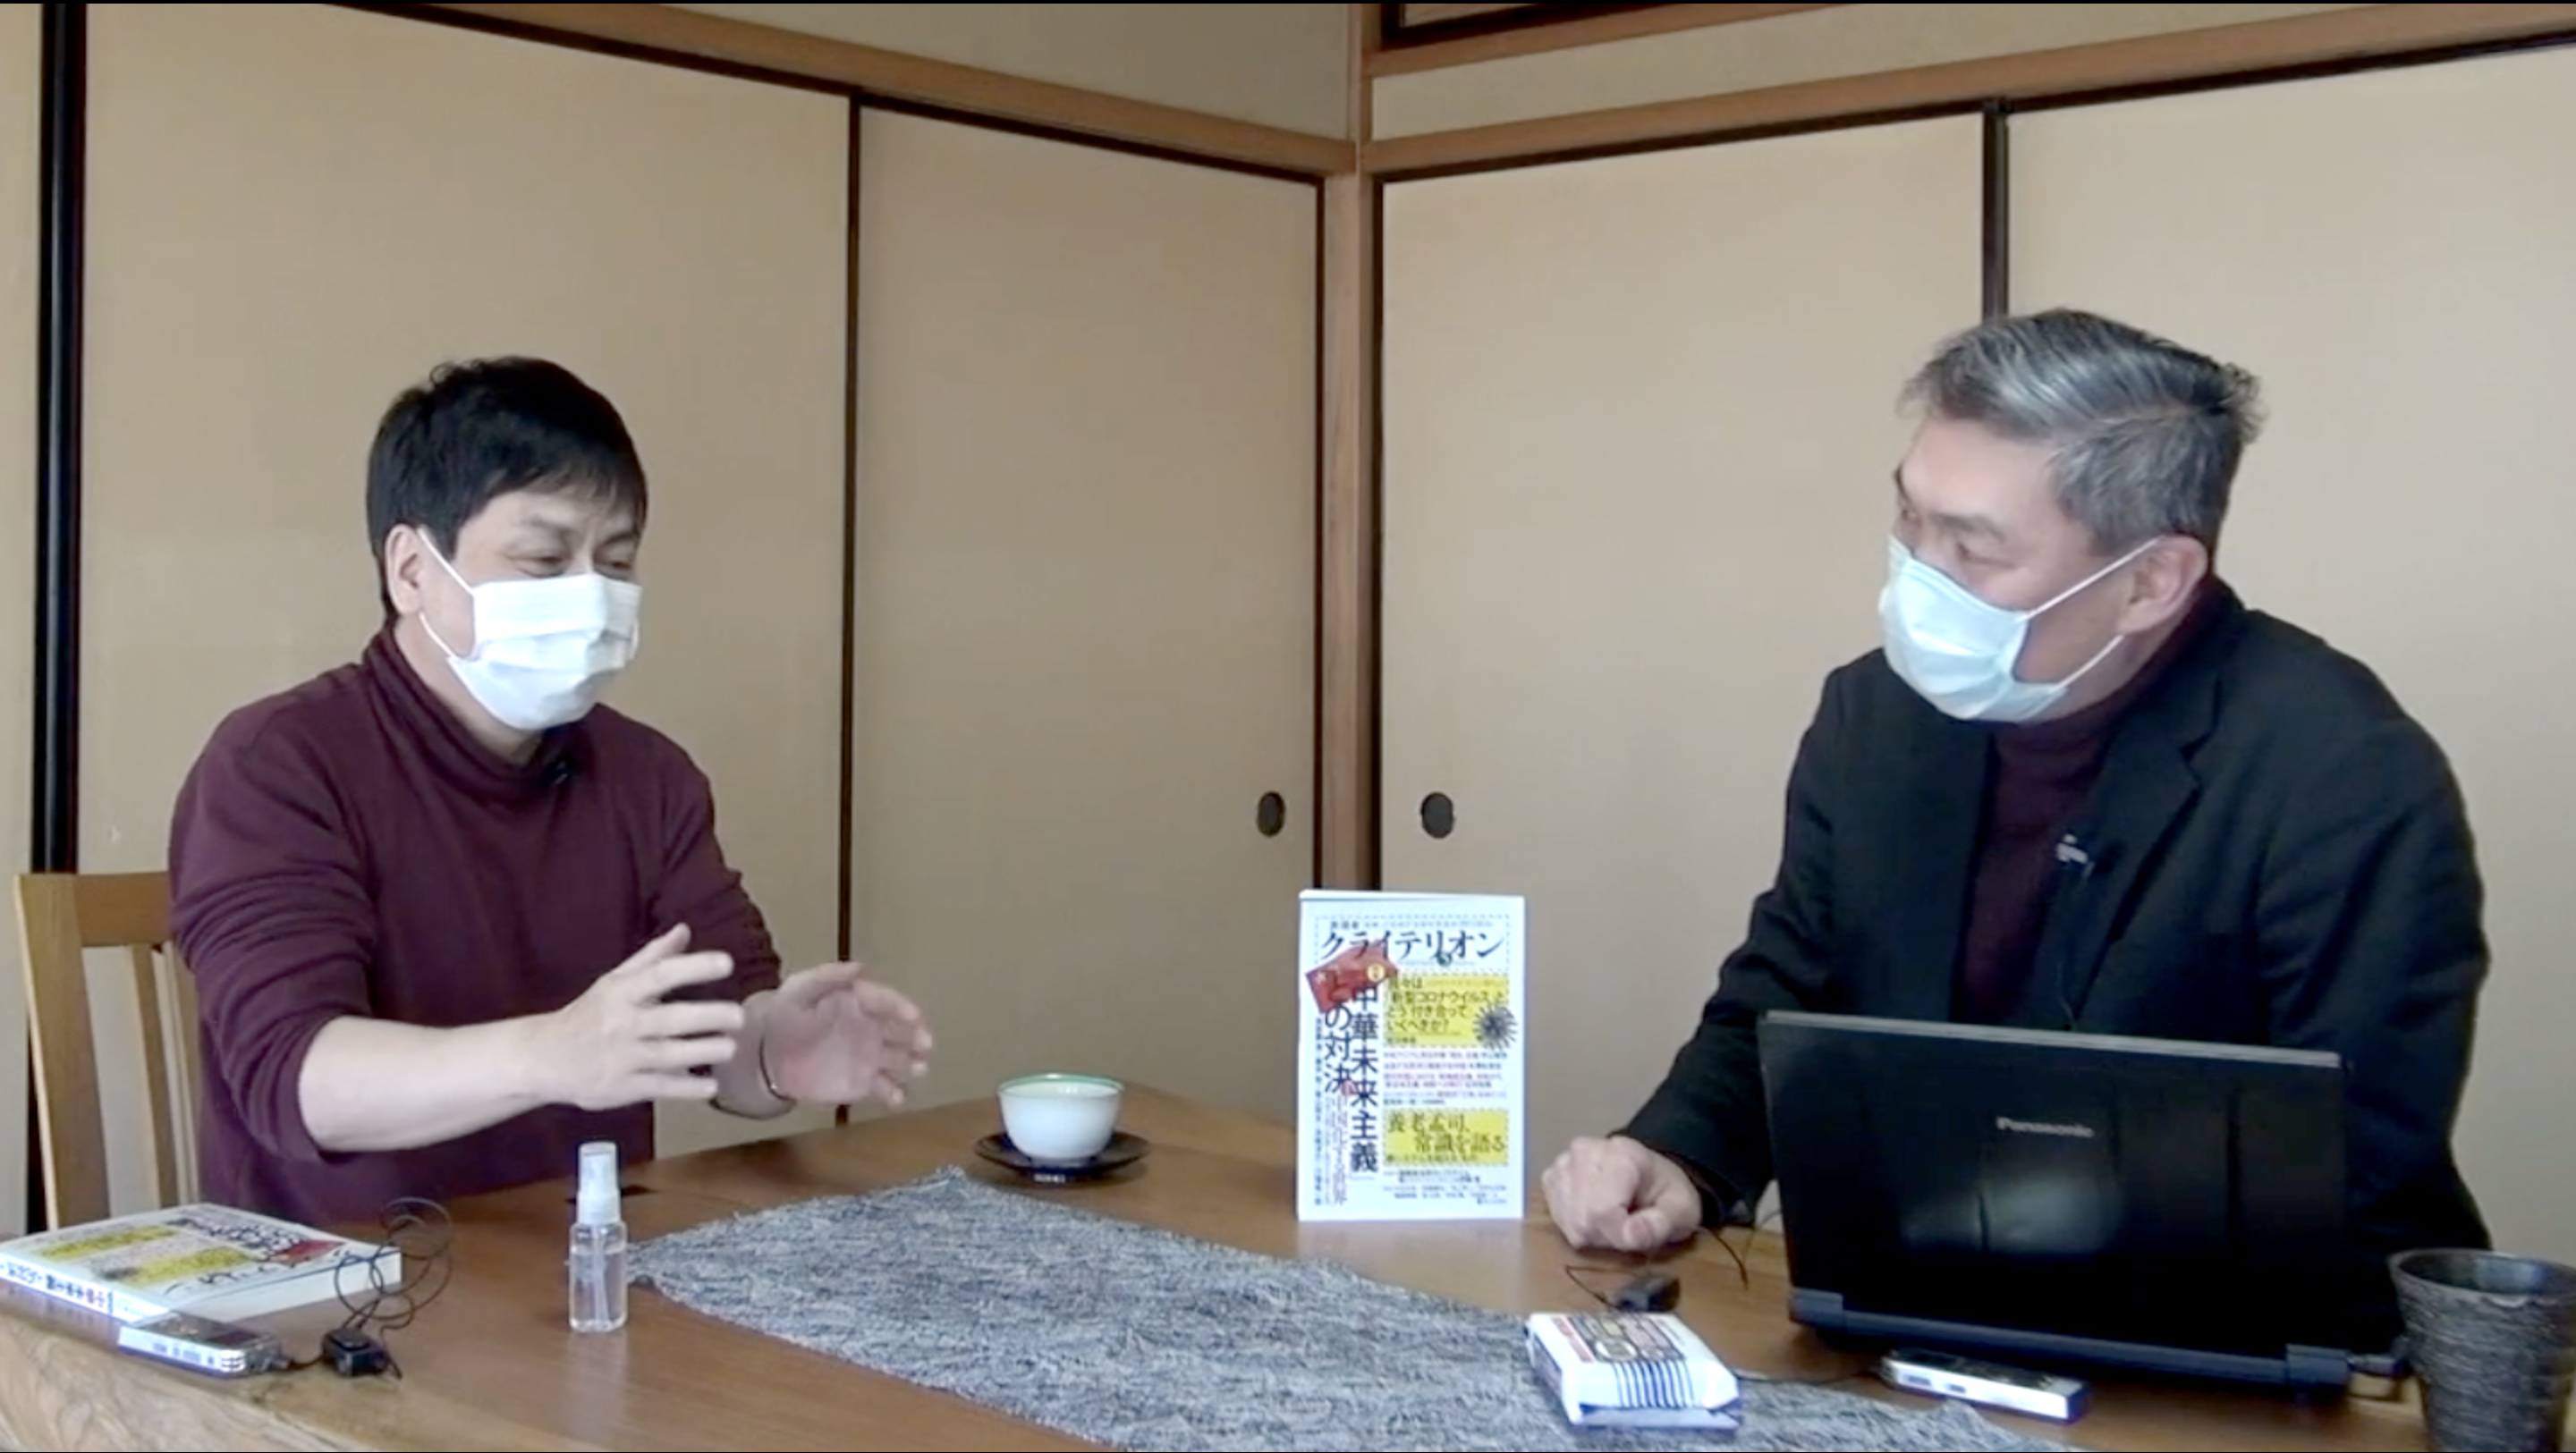 すぎ コロナ びびり 【悲報】北野武さん、タブーに触れてしまう「新型コロナってインフルエンザよりショボいのに騒ぎすぎ」